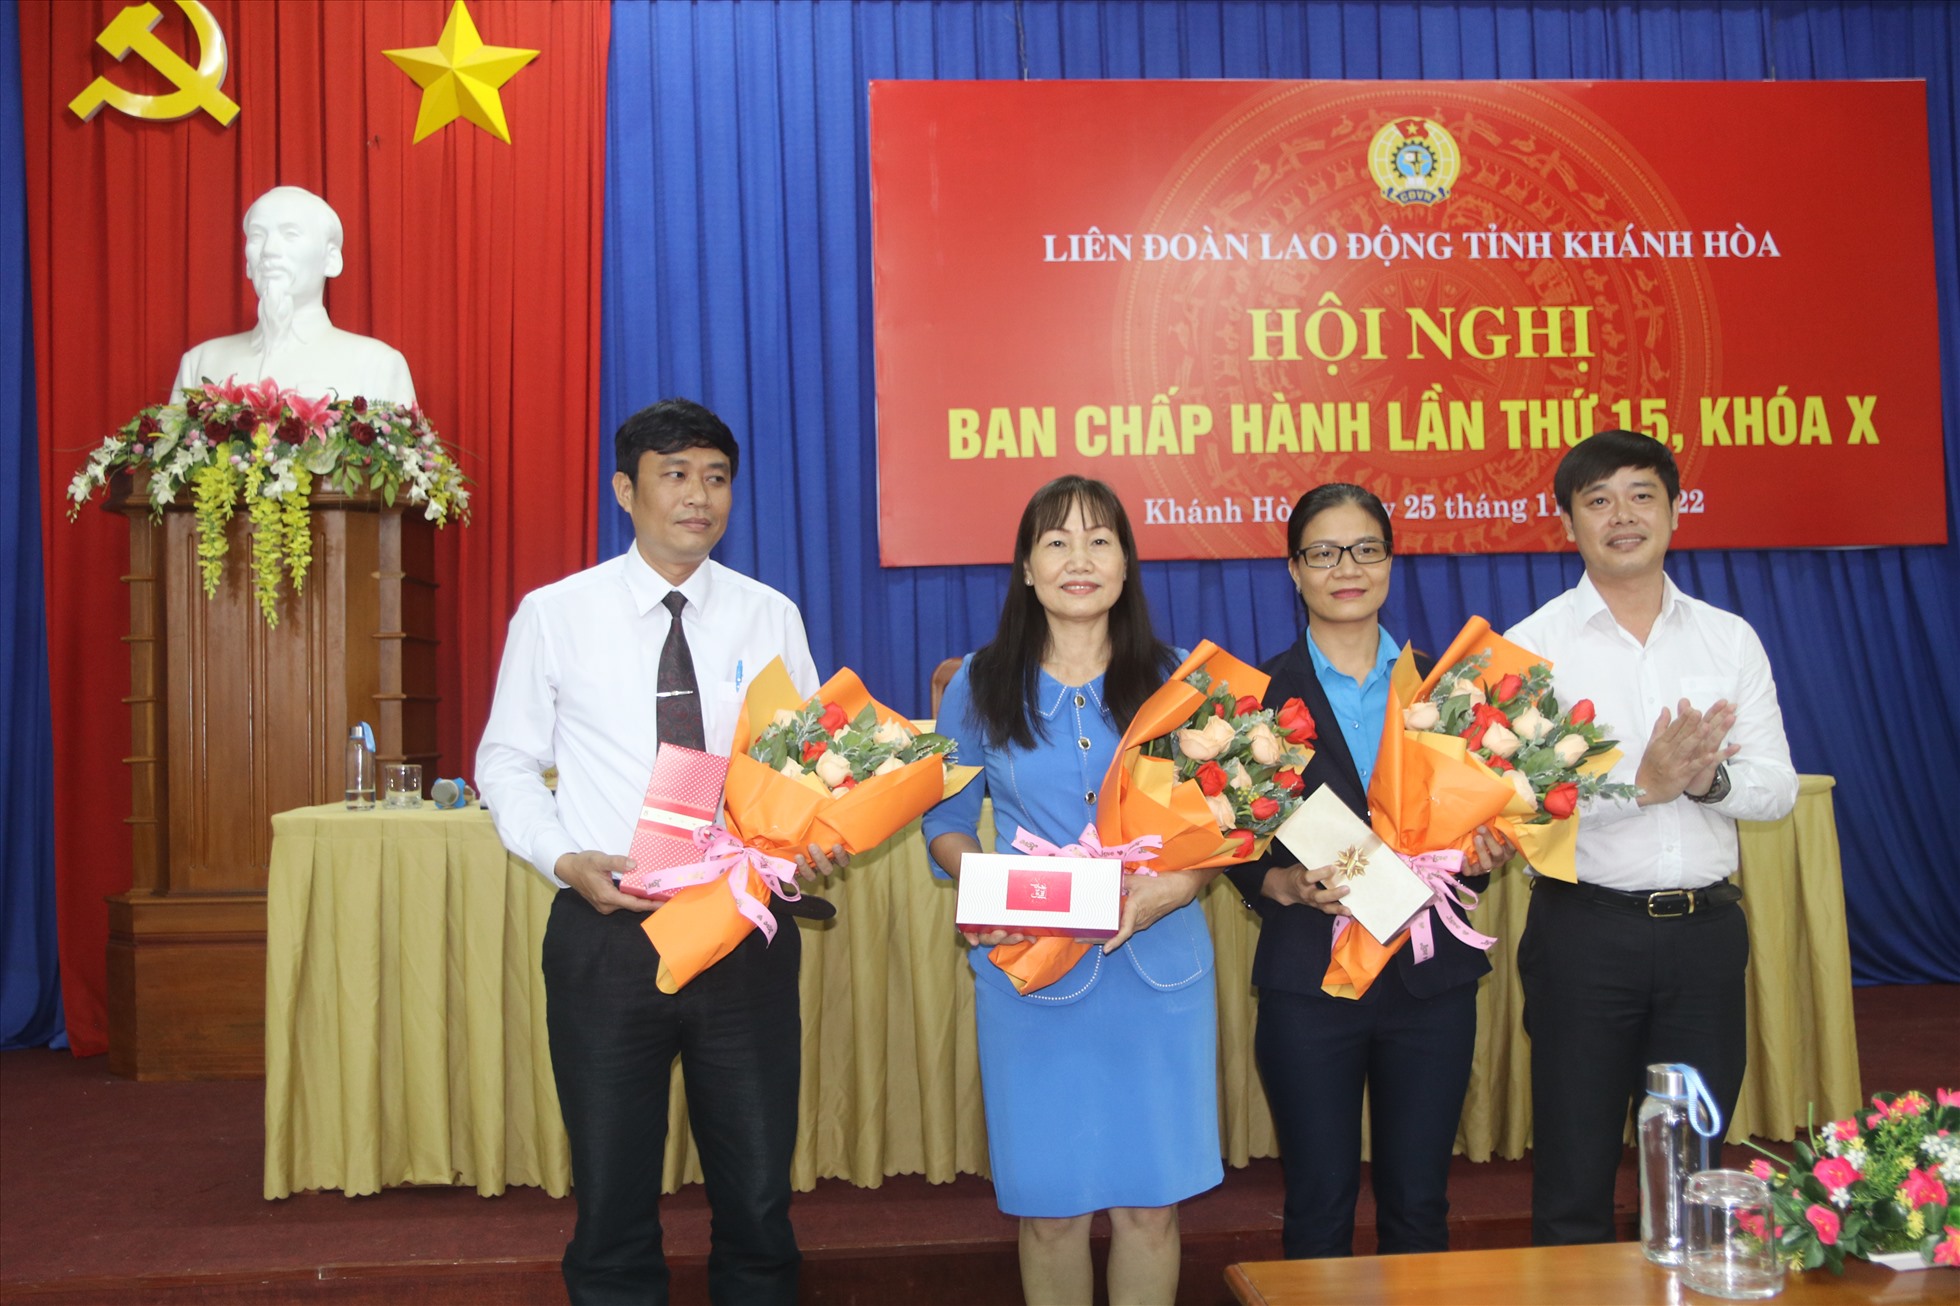 Lãnh đạo LĐLĐ tỉnh Khánh Hòa tặng hoa các đồng chí thôi tham gia ban chấp hành. Ảnh: P.Linh